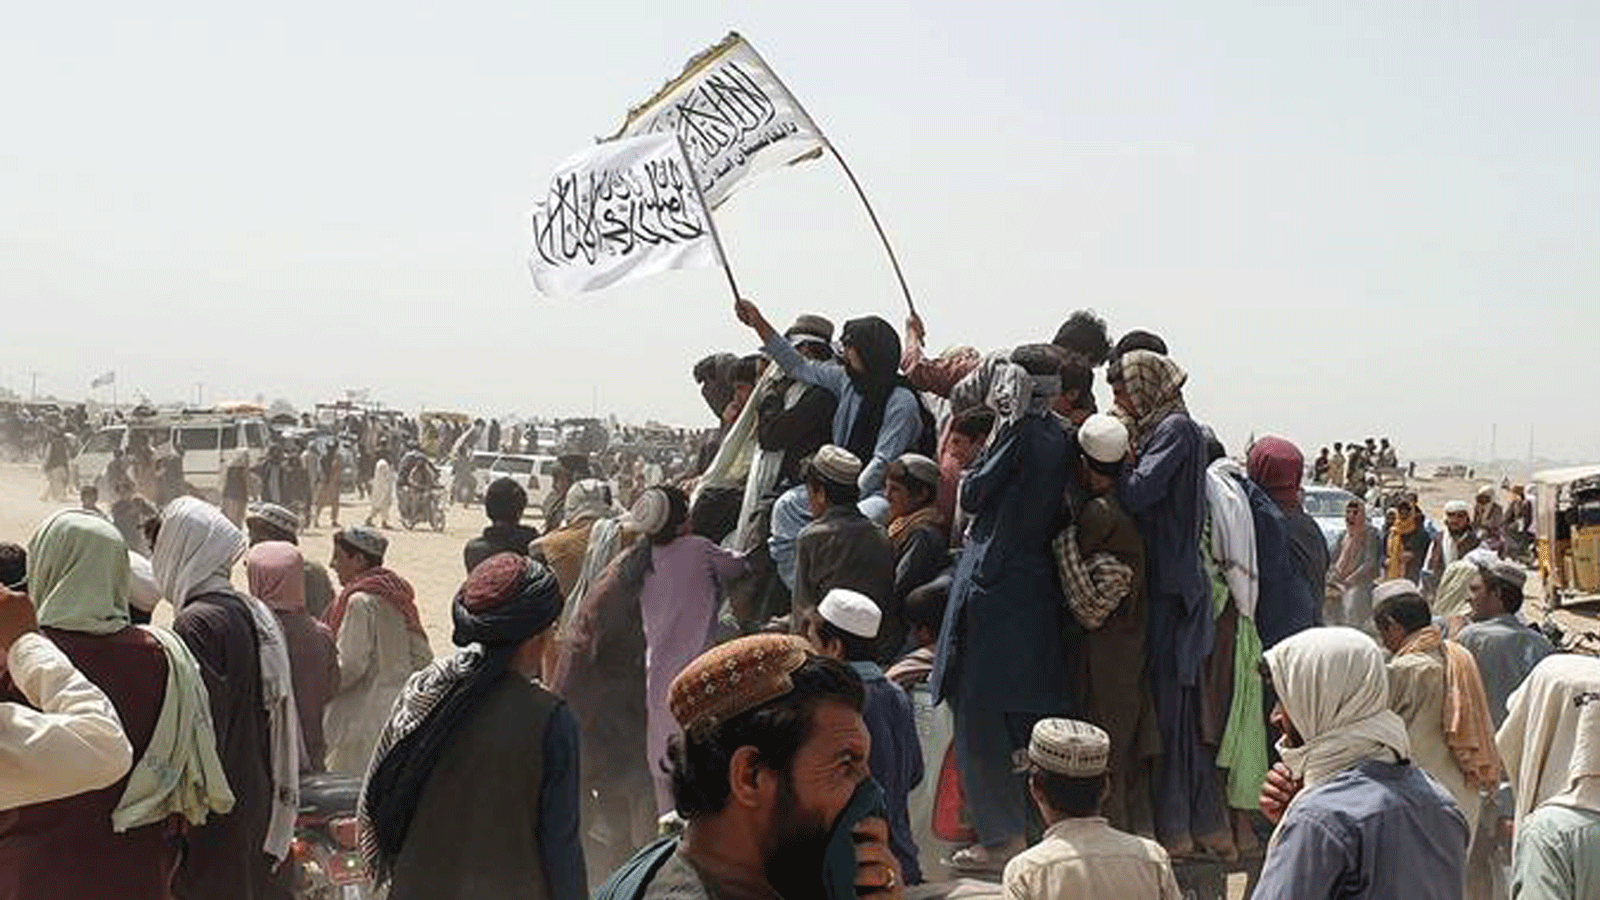 أشخاص يلوحون بأعلام طالبان أثناء مرورهم بسياراتهم عبر بلدة شامان الحدودية الباكستانية